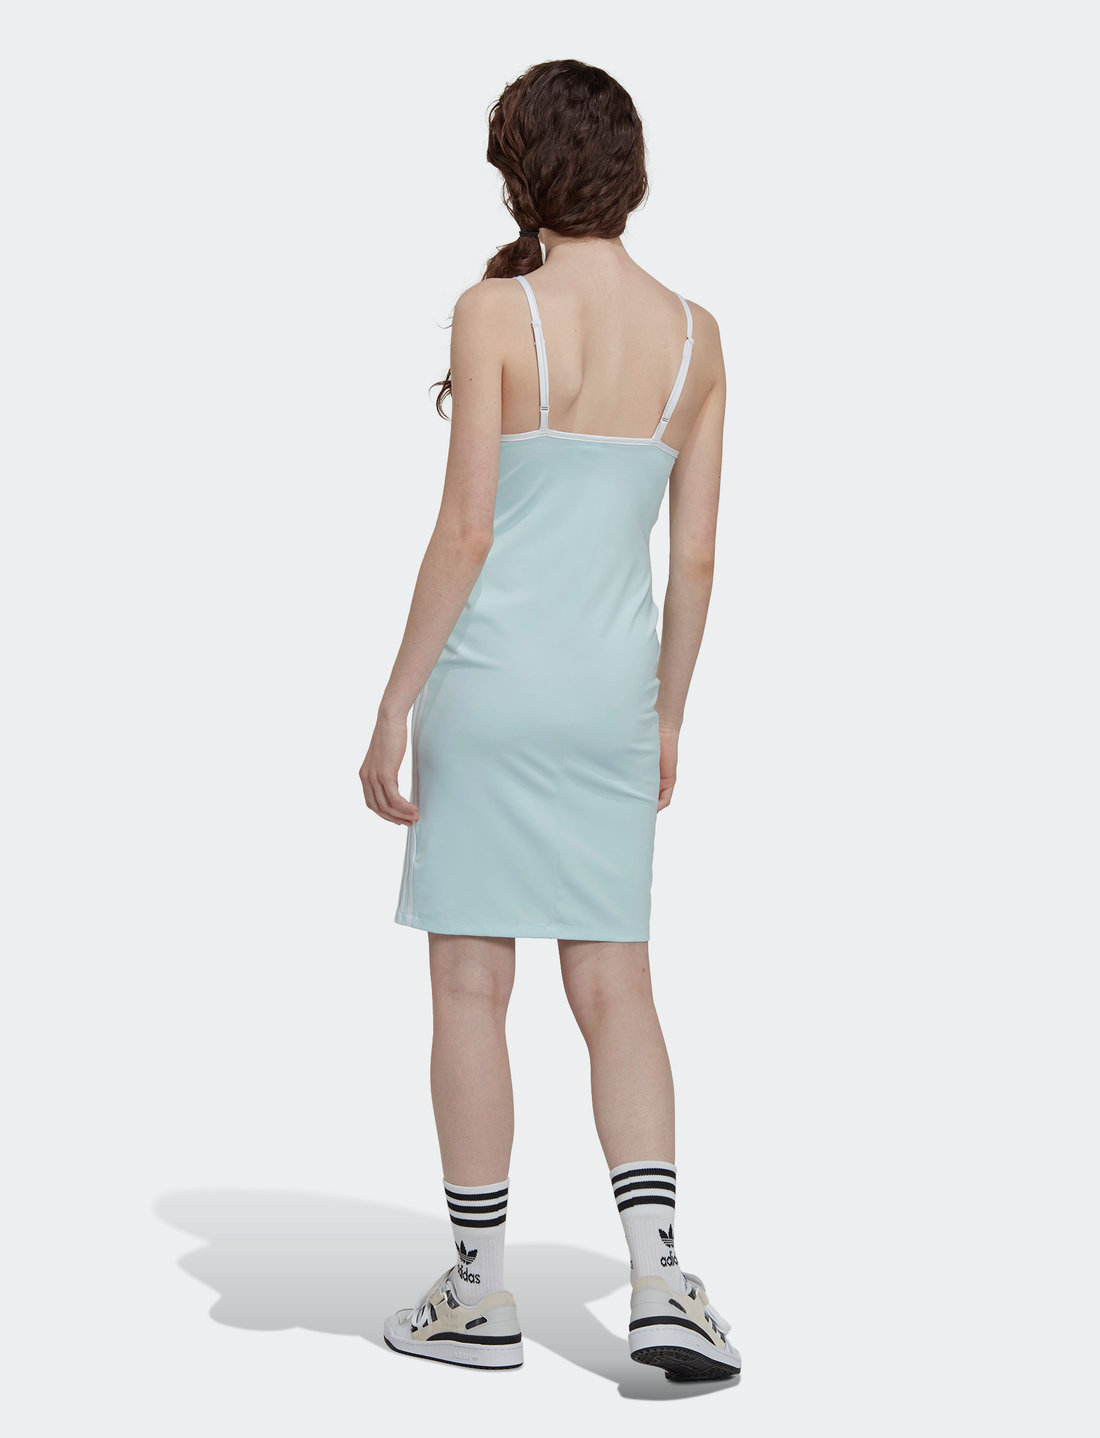 adidas Originals Always Original Laced Strap Dress - Kleider | Boozt.com  Österreich